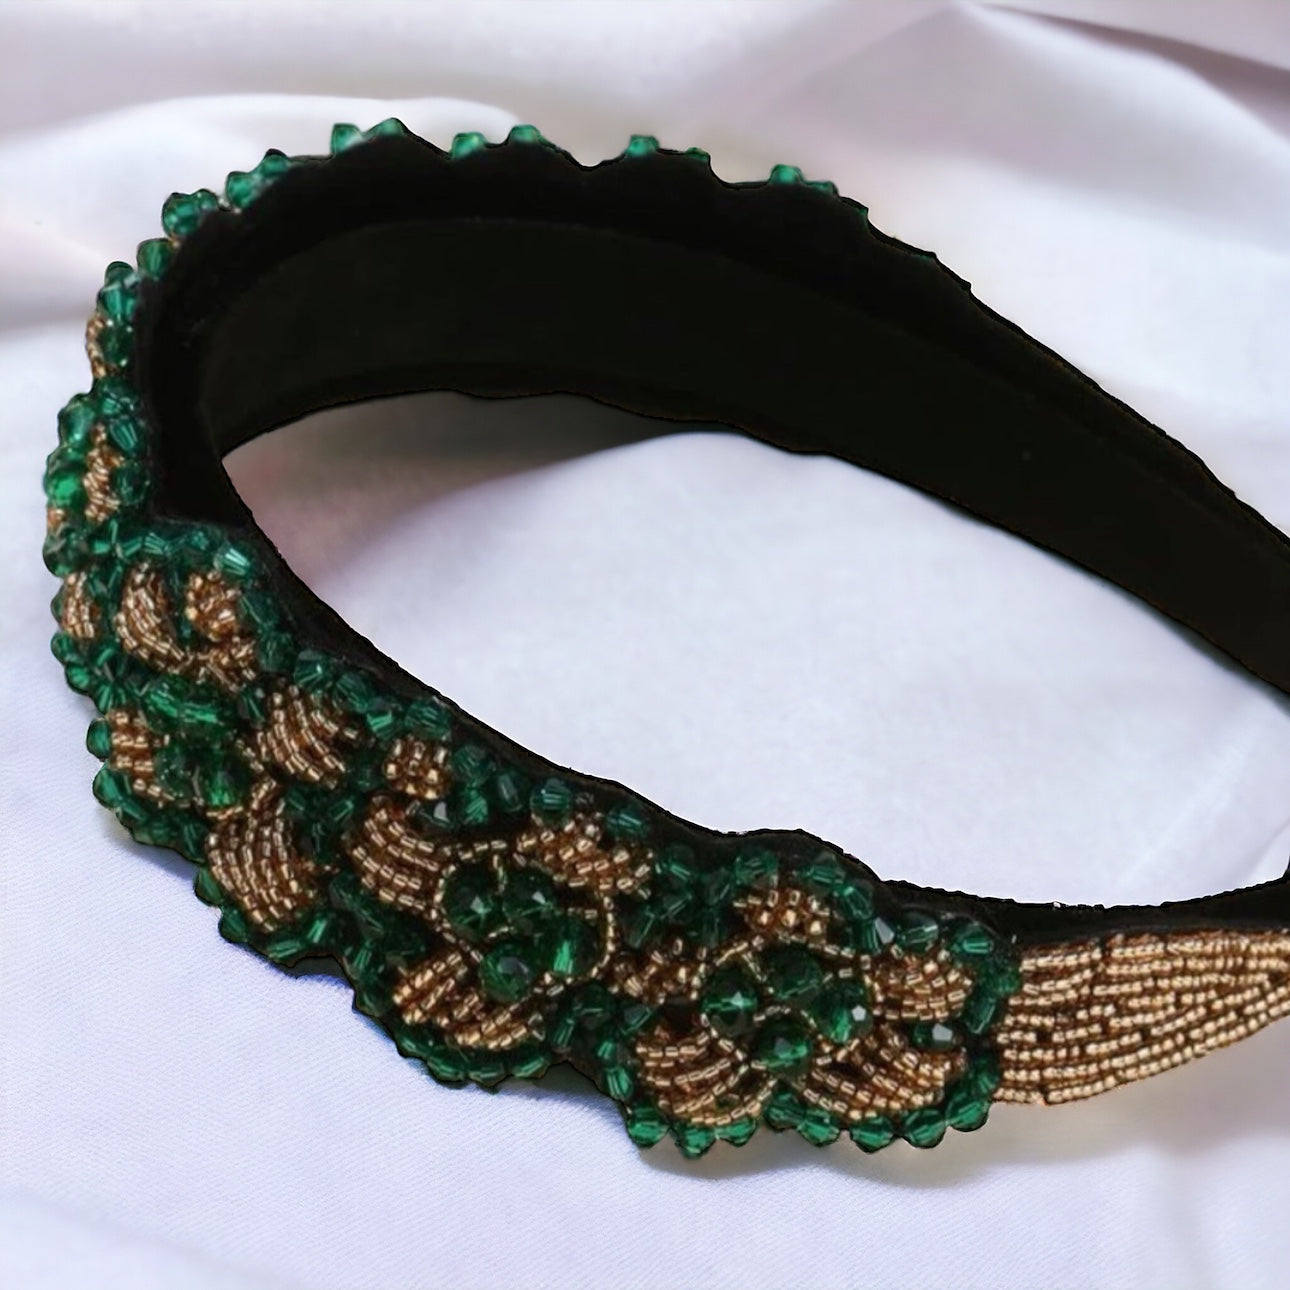 Beaded Green and Gold Headband - Handmade Headpiece, St. Patrick’s Day Headband, Holiday Headpiece, Beaded Headband